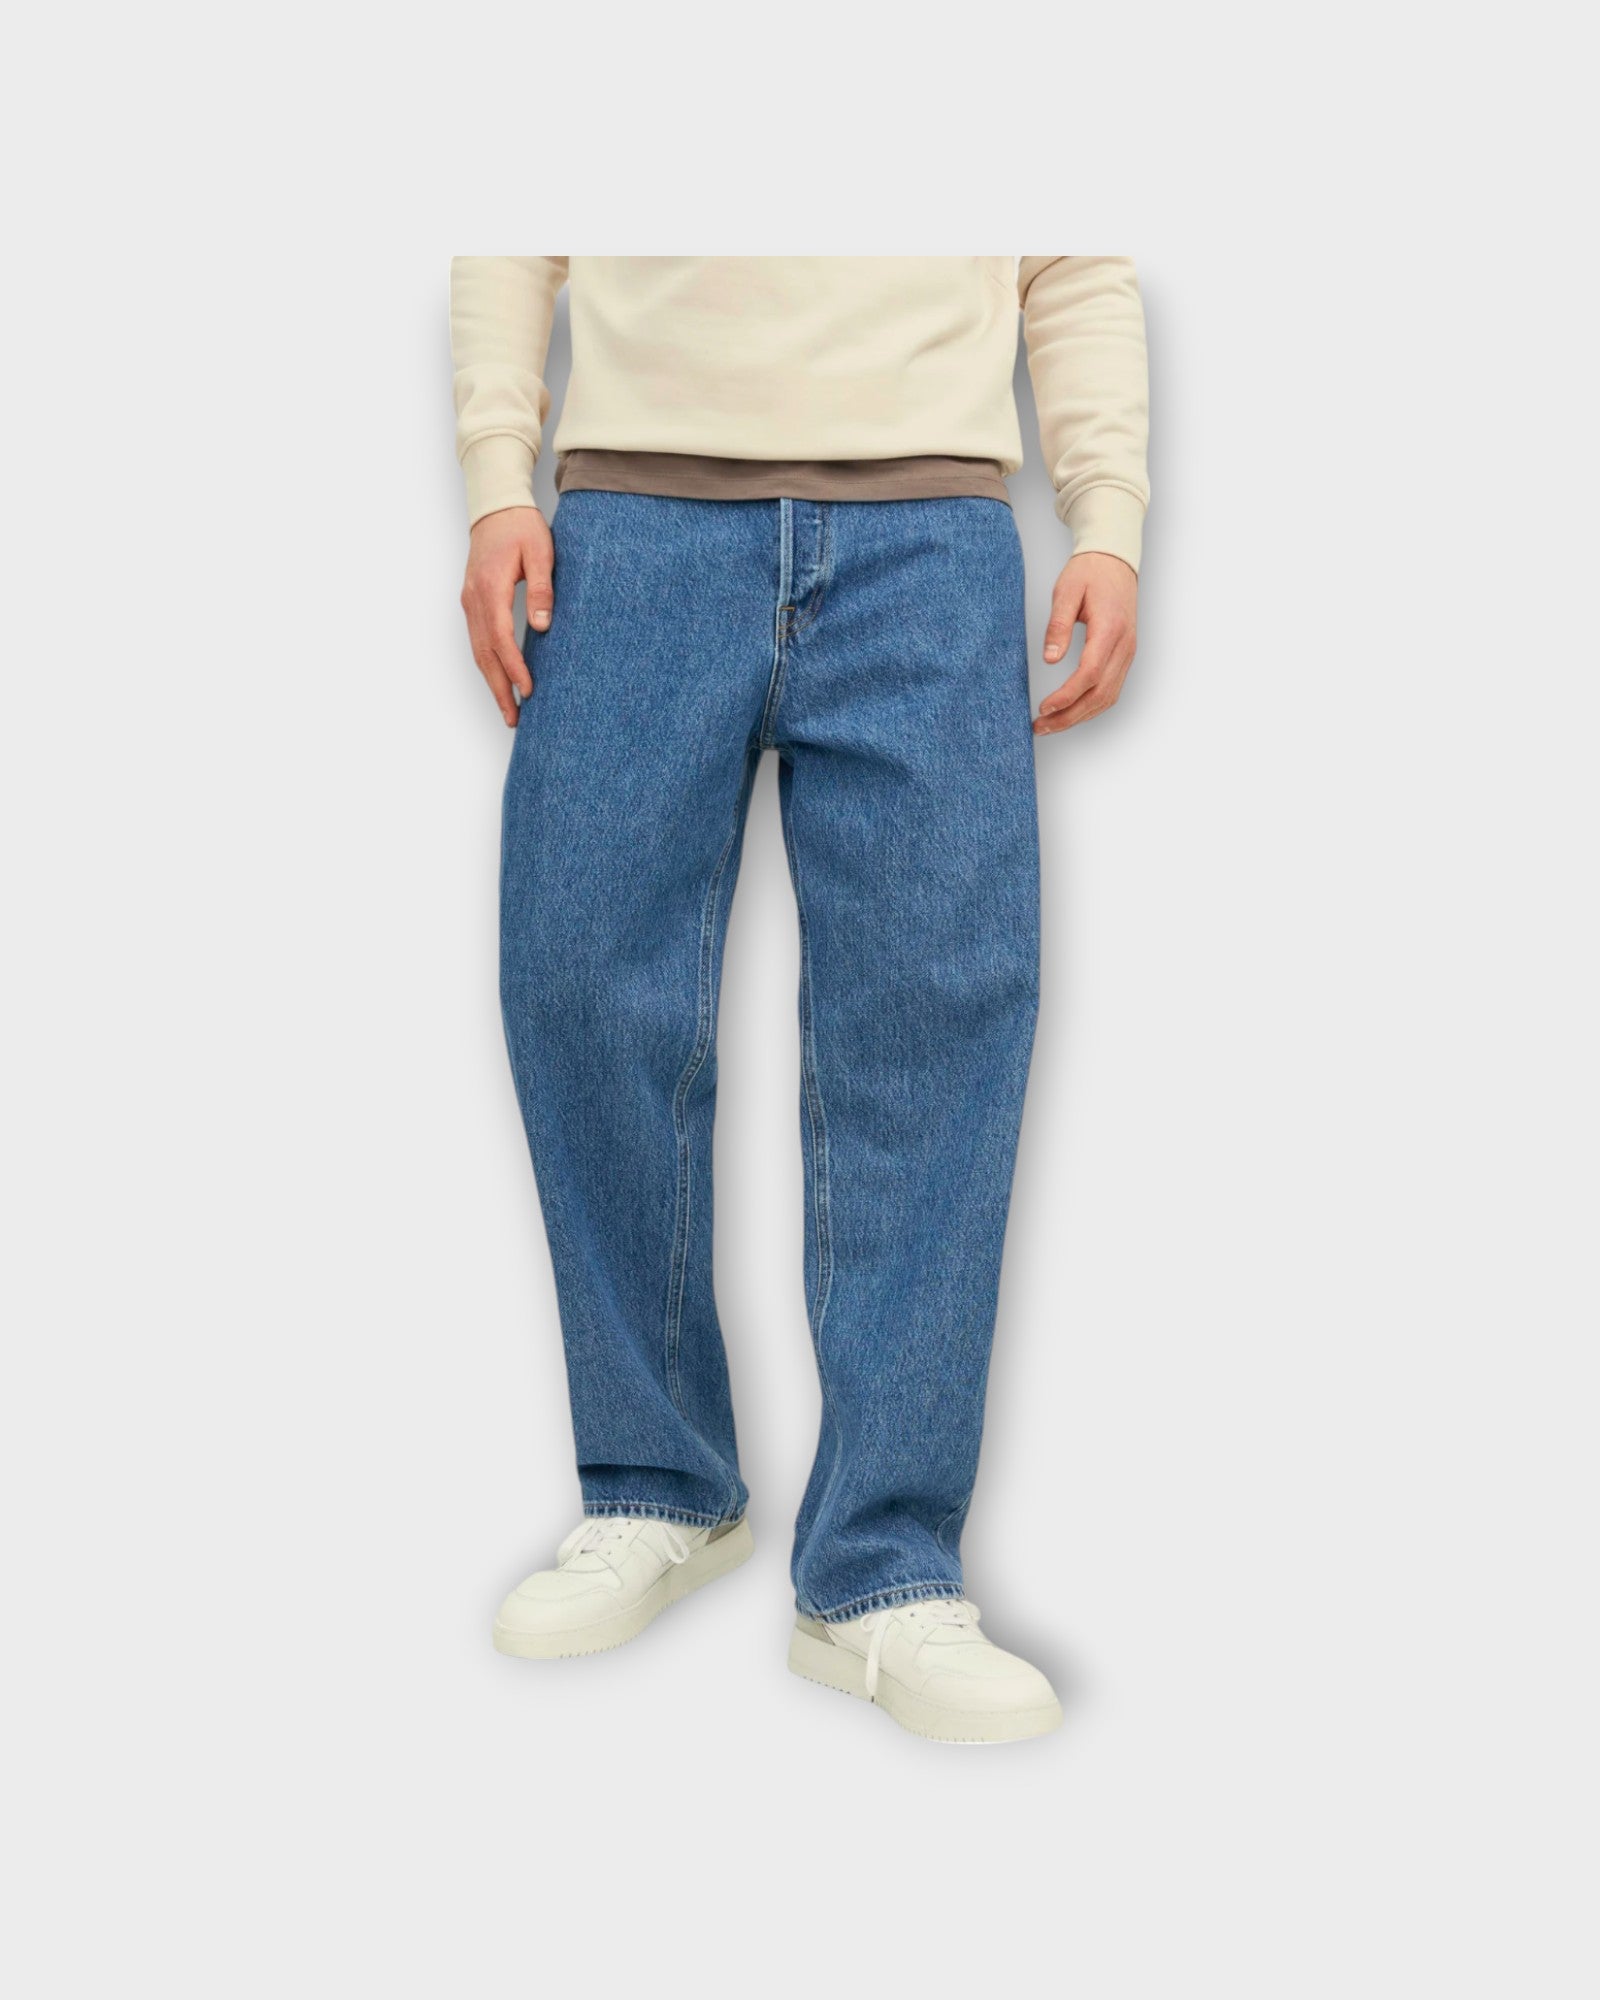 Alex Original Jeans Blue Denim - Blå Baggy Jeans til Mænd fra Jack & Jones. Her set forfra.